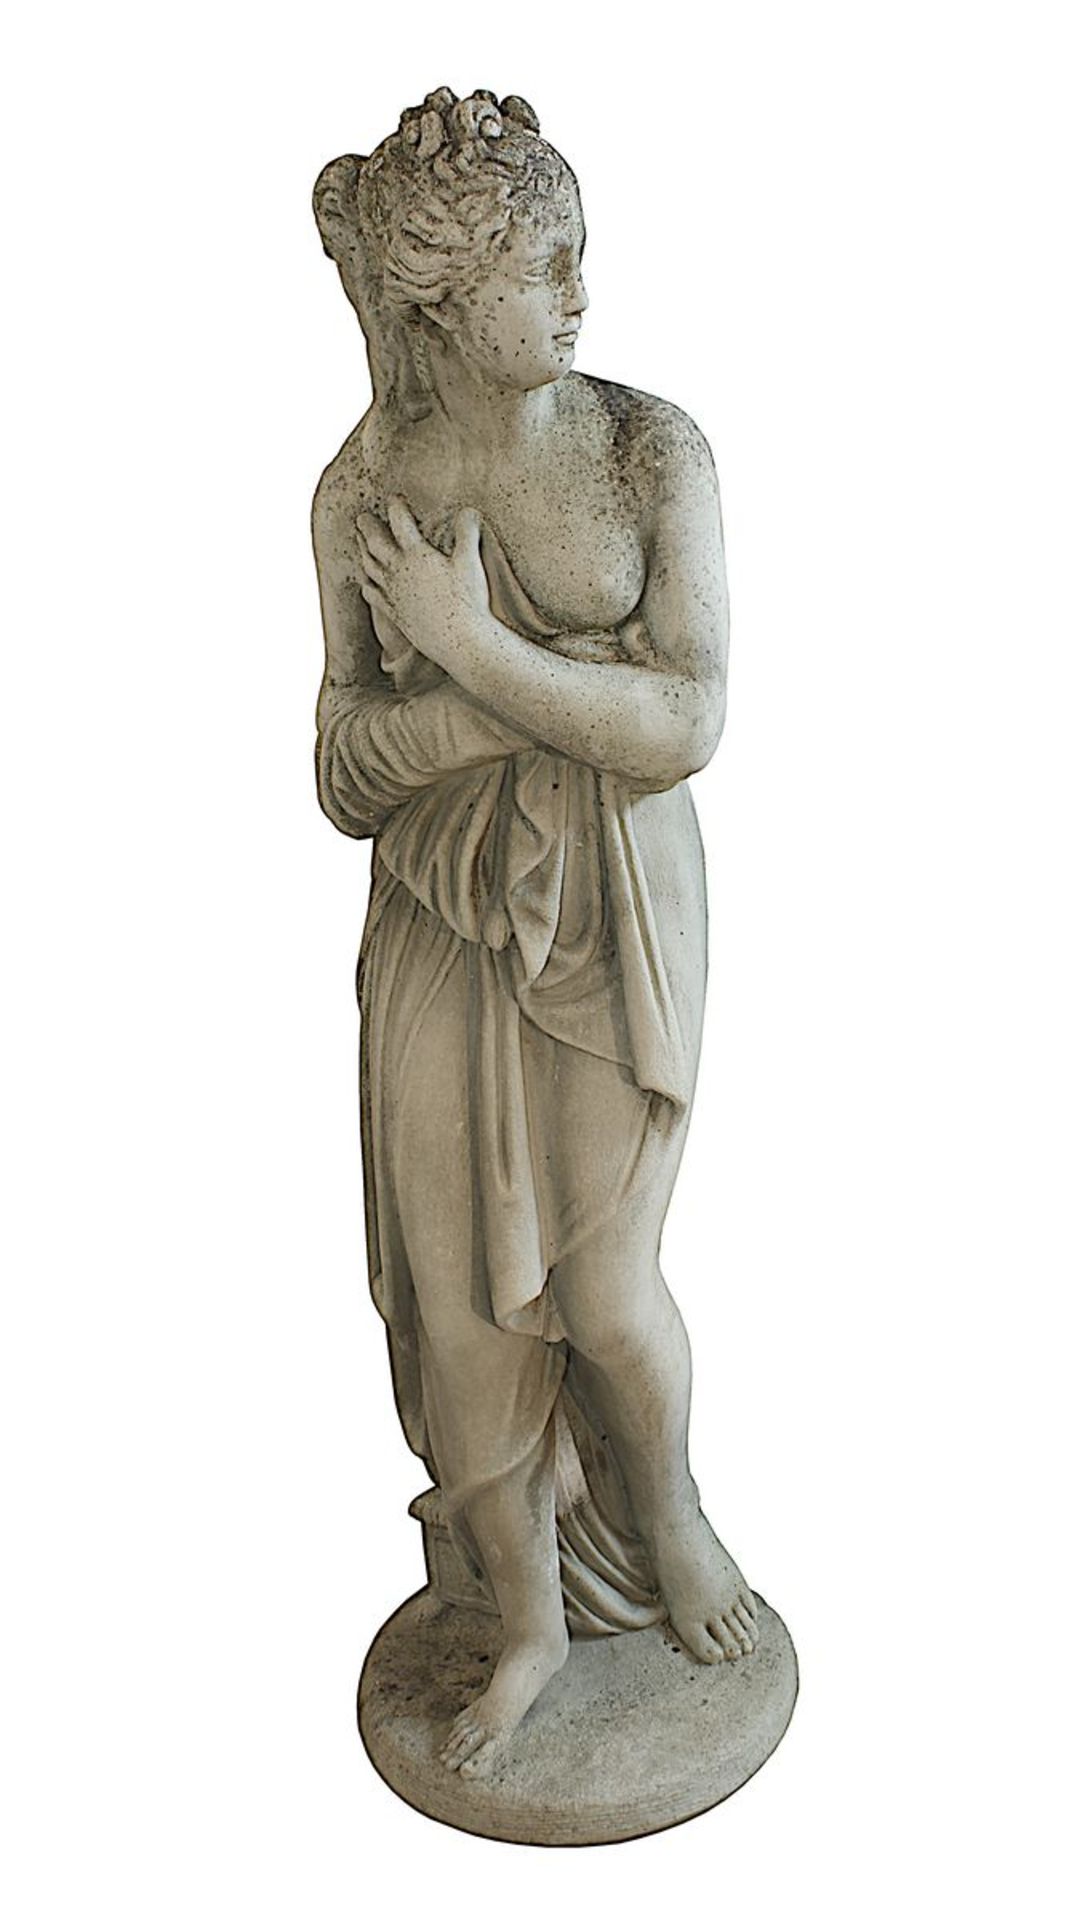 Gartenfigur Junge Schöne, 2. Hälfte 20. Jh., nach antikem Vorbild, Steinguss mit schöner